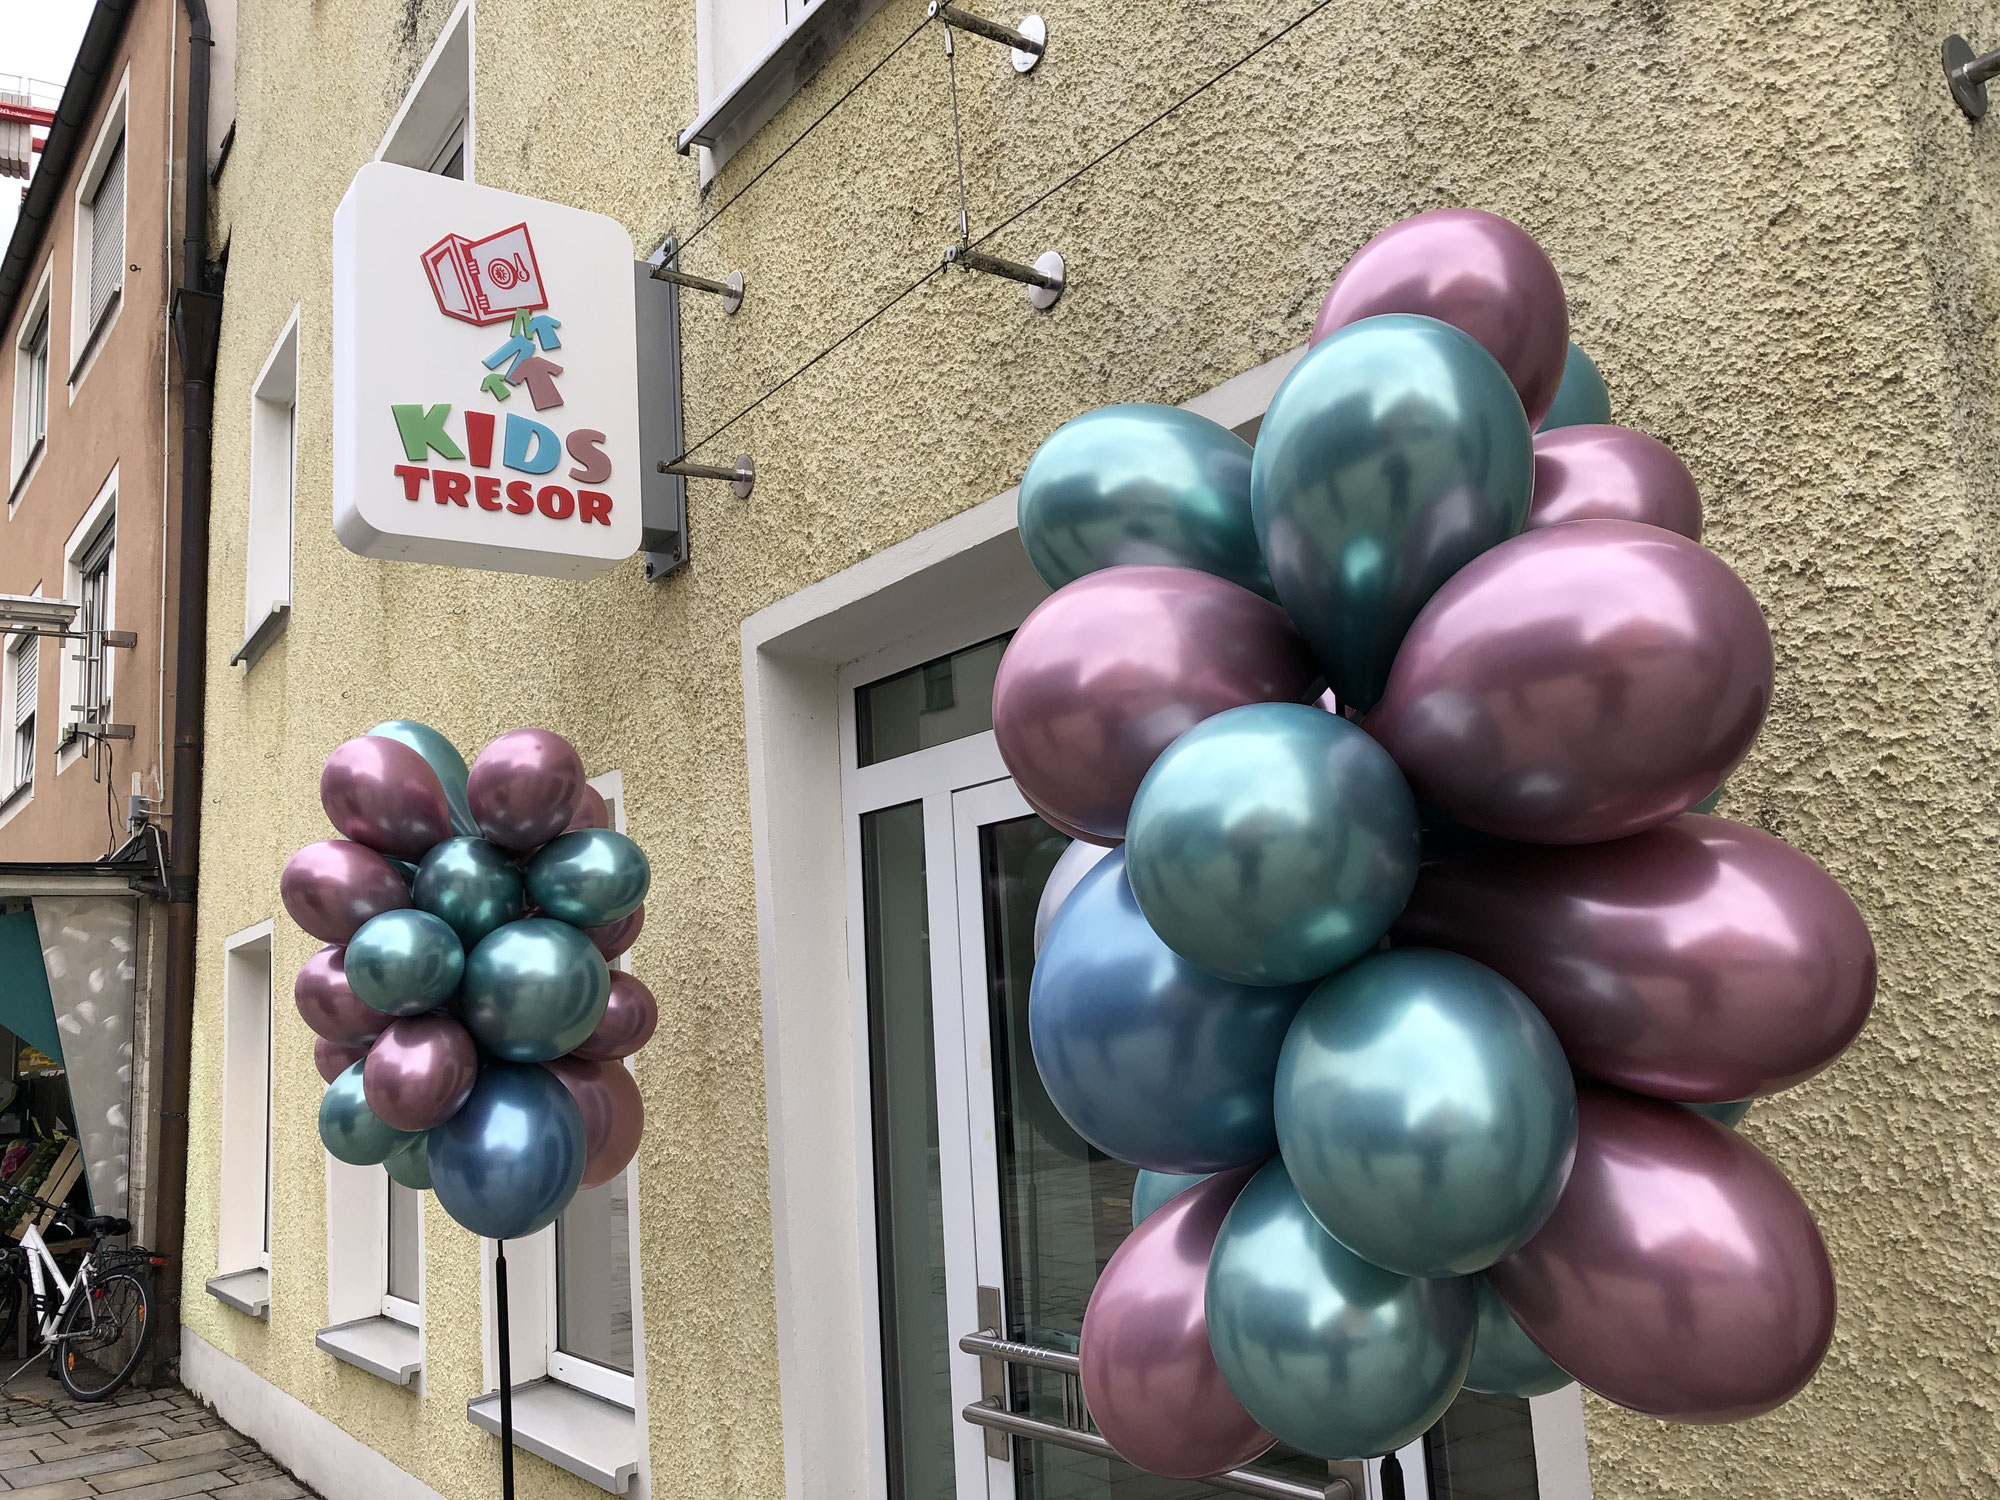 Der "Kids Tresor" eröffnet in der Klostergasse